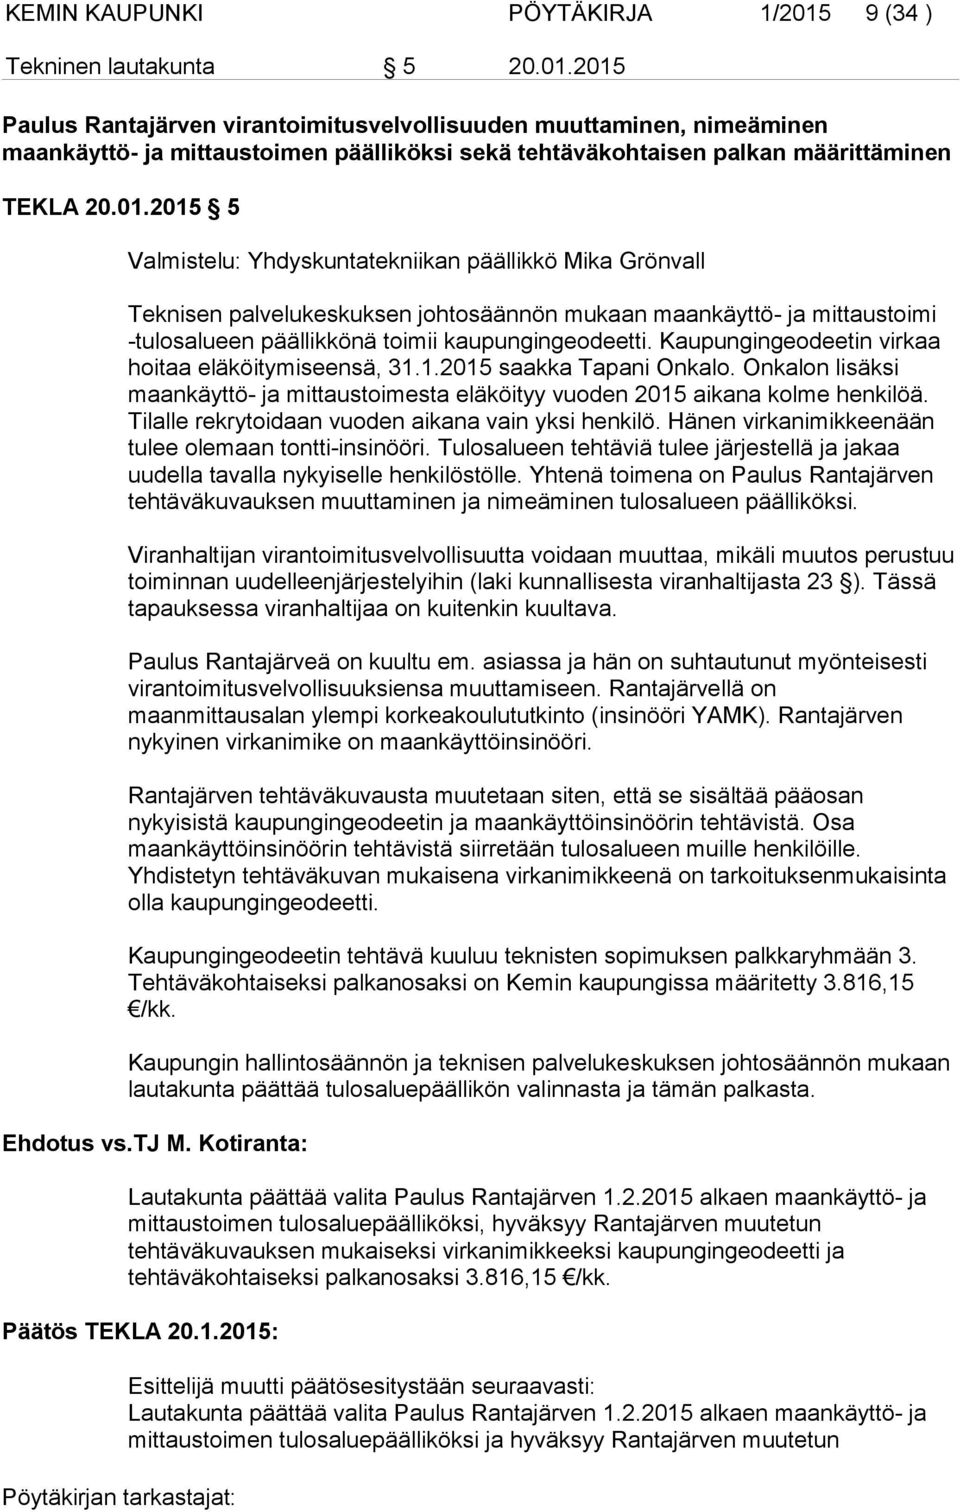 2015 Paulus Rantajärven virantoimitusvelvollisuuden muuttaminen, nimeäminen maankäyttö- ja mittaustoimen päälliköksi sekä tehtäväkohtaisen palkan määrittäminen TEKLA 20.01.2015 5 Valmistelu: Yhdyskuntatekniikan päällikkö Mika Grönvall Teknisen palvelukeskuksen johtosäännön mukaan maankäyttö- ja mittaustoimi -tulosalueen päällikkönä toimii kaupungingeodeetti.